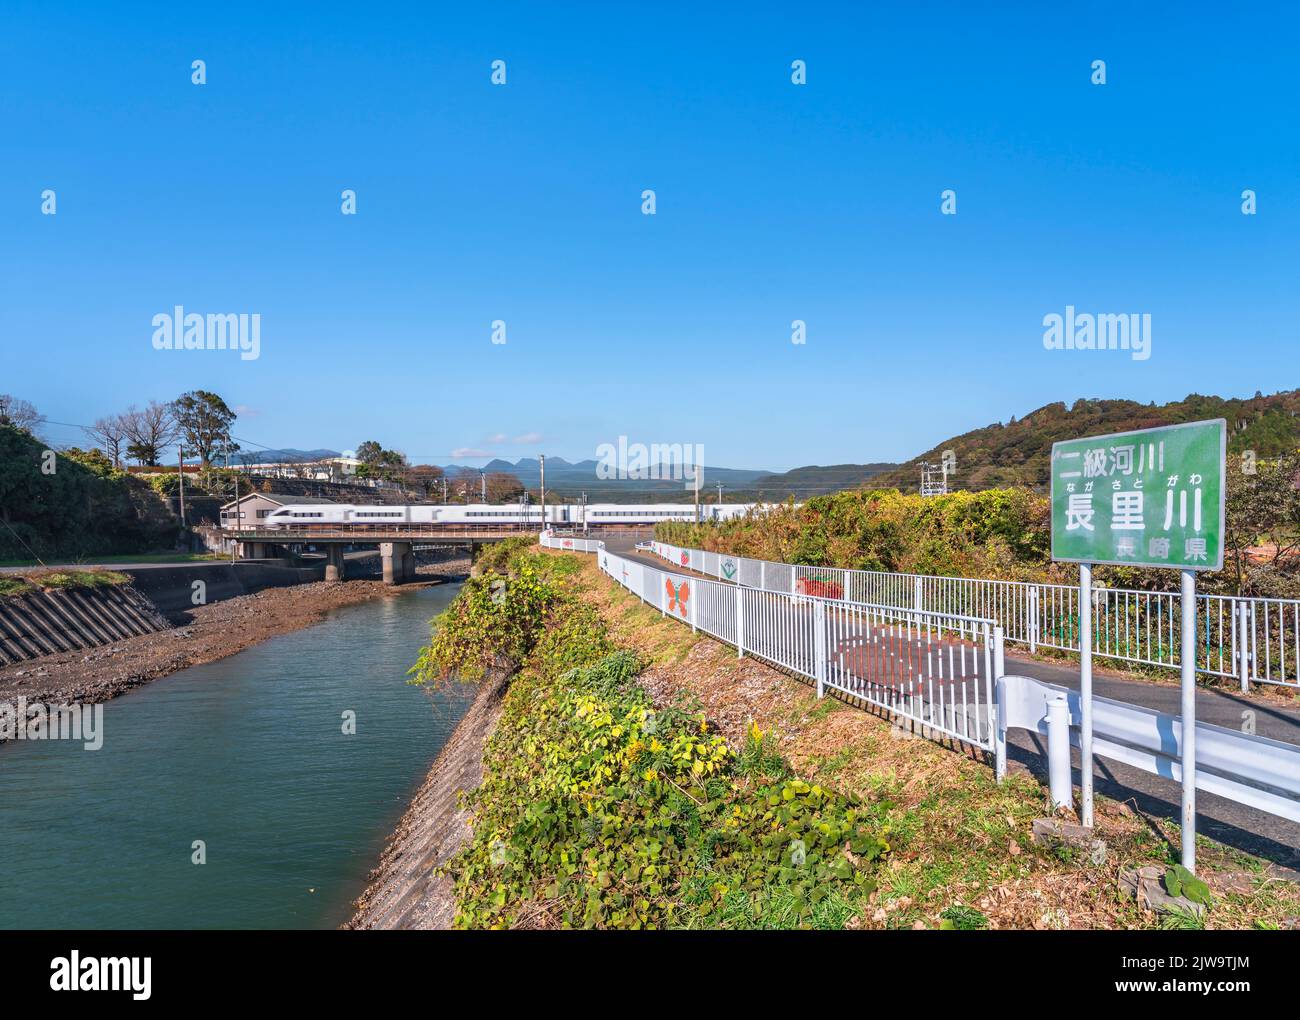 kyushu, giappone - dicembre 10 2021: Il fiume Nagasato attraversato da un treno sulla linea principale di Nagasaki a parte un percorso adornato con illustrazioni di insetti e. Foto Stock